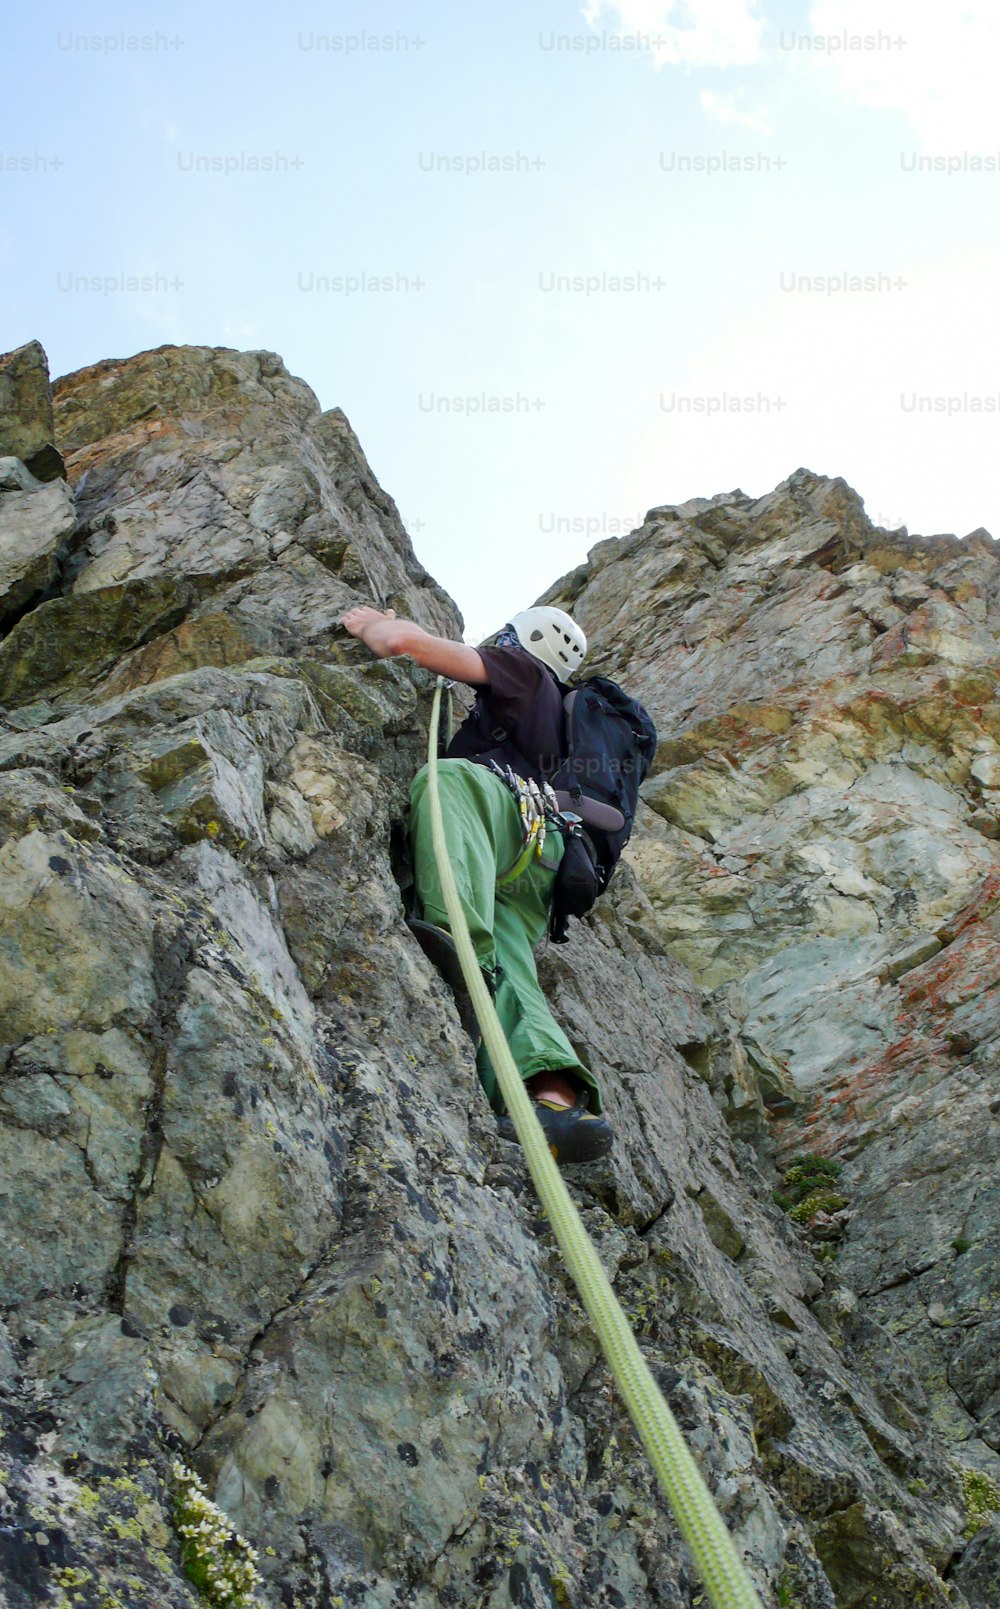 Un escalador en una ruta de escalada empinada en los Alpes